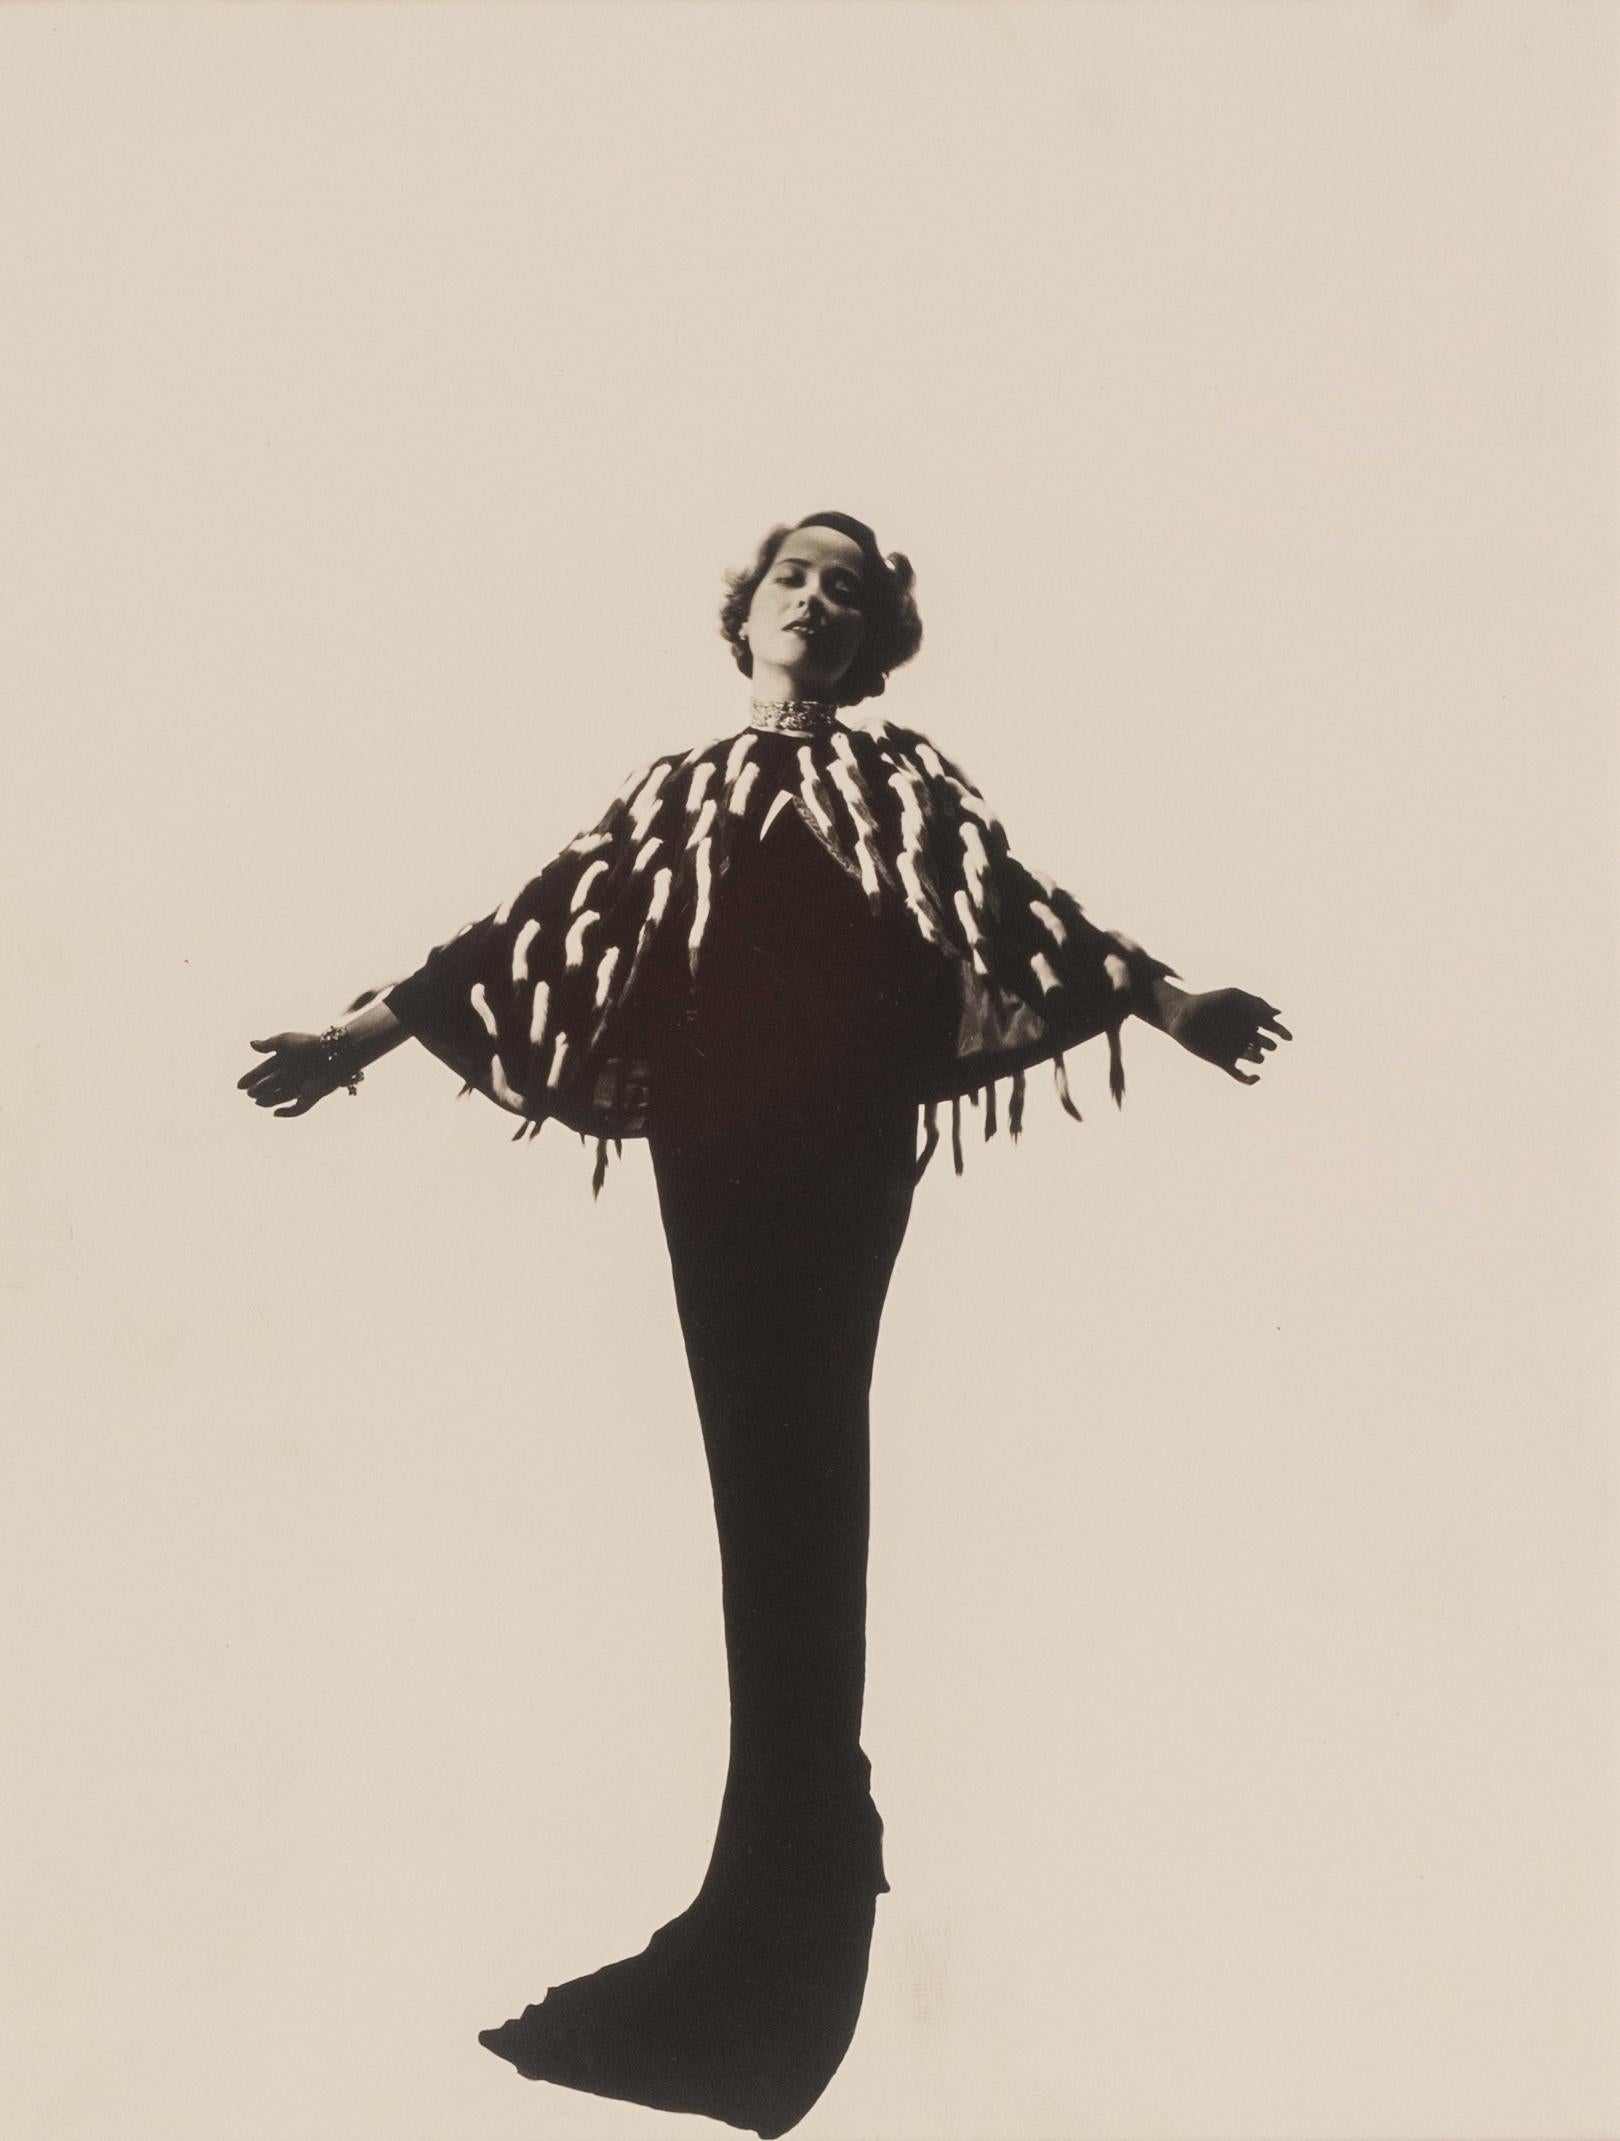 Merle Oberon, 1930er Jahre – Cecil Beaton (Porträtfotografie)
Bezeichnet 'Merle Oberon' und rückseitig mit dem Stempel von Sotheby's Cecil Beaton Studio gestempelt
Silber-Gelatine-Druck
10 x 7 3/4 Zoll

Cecil Beaton (1904-1980) hatte ein brillantes